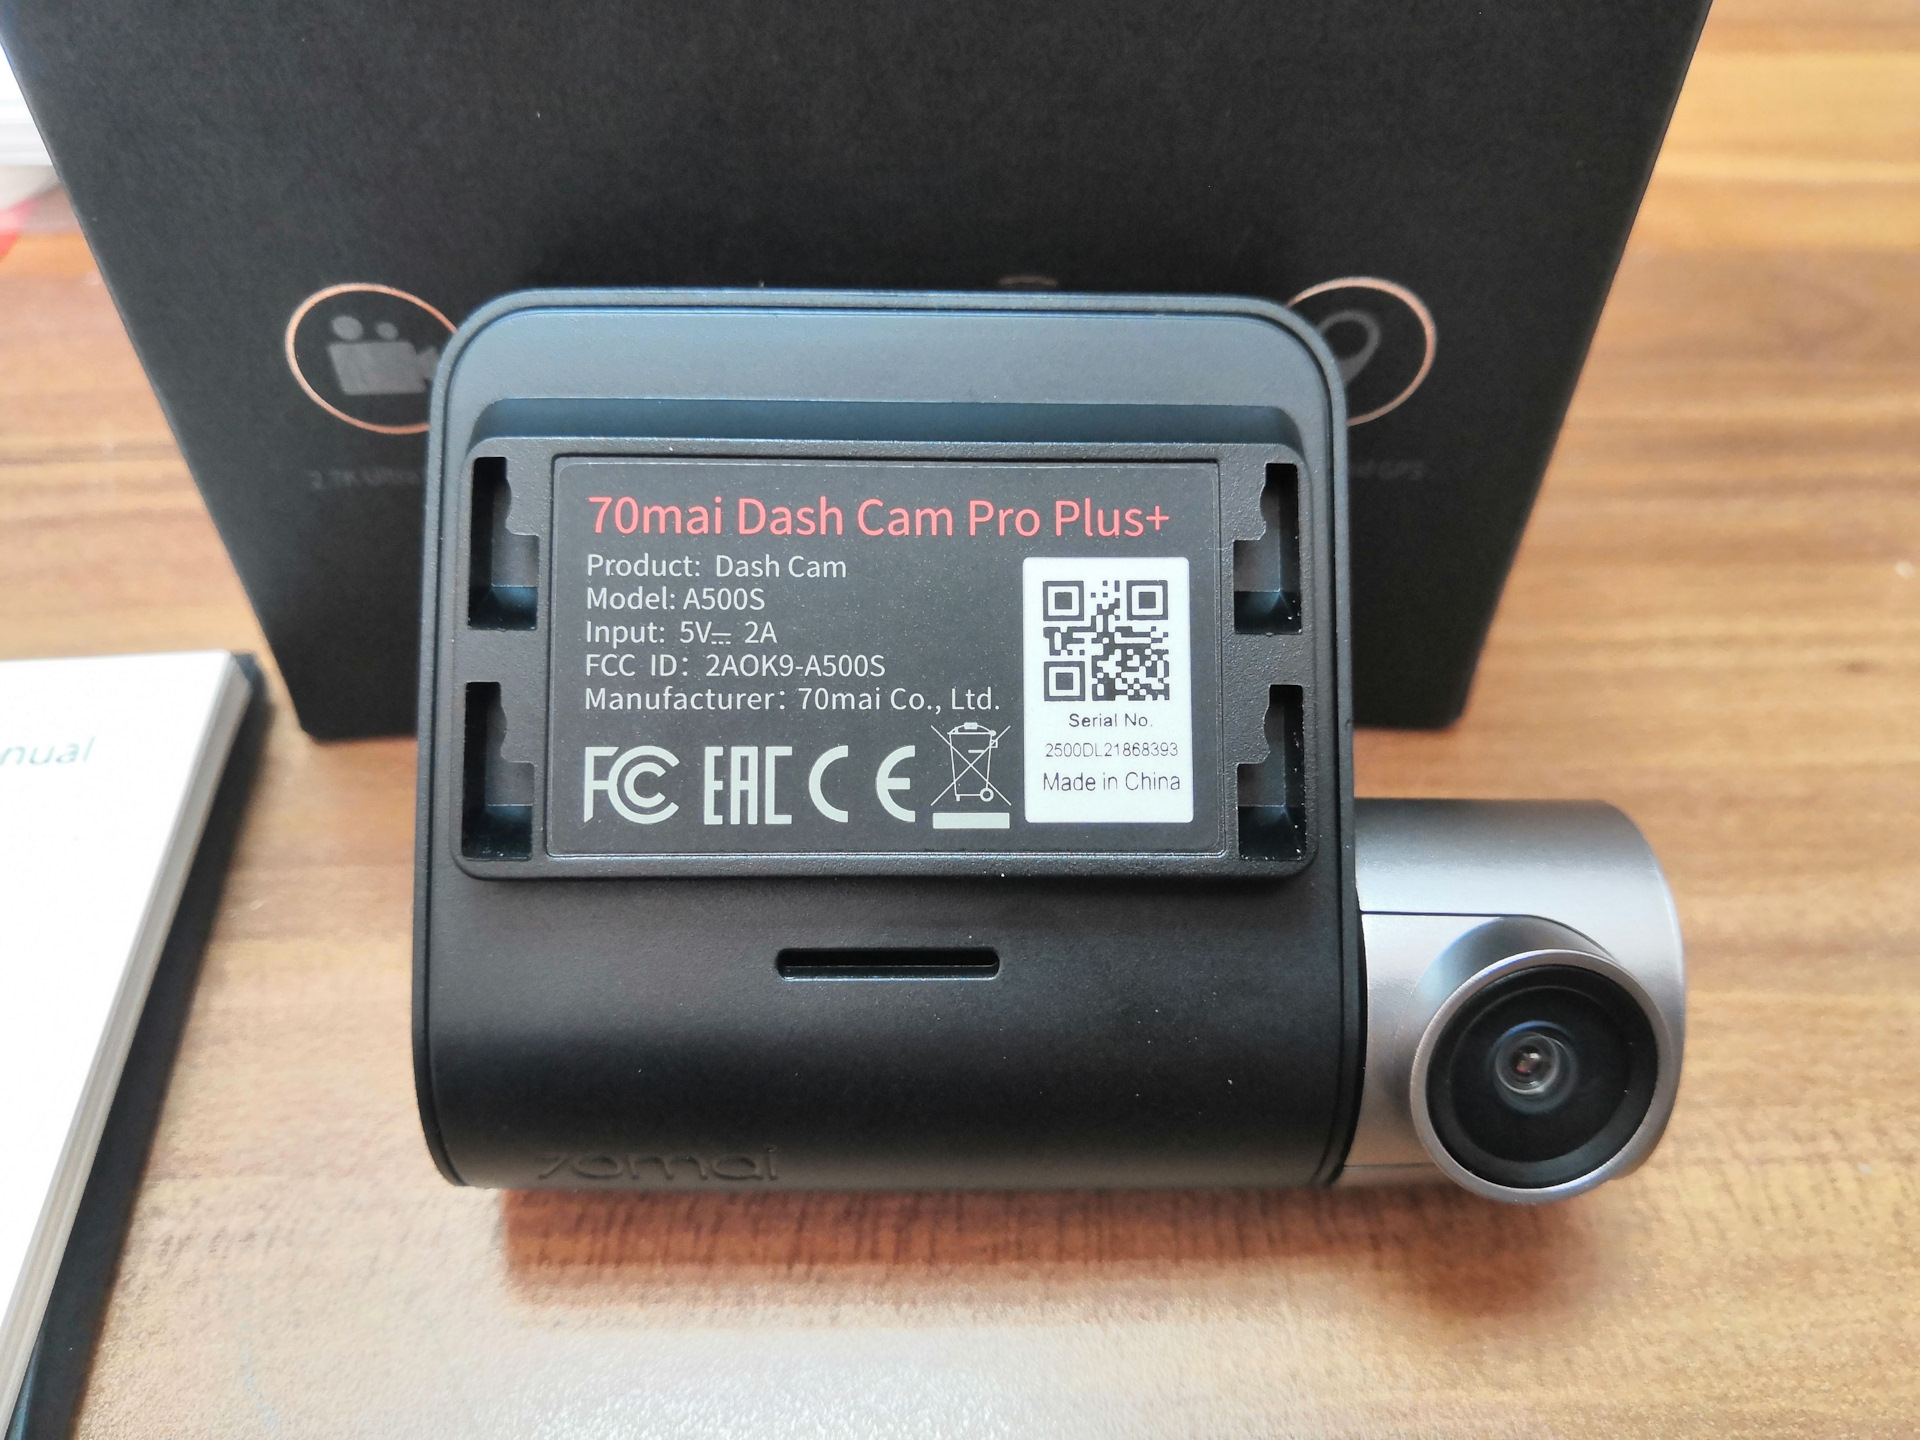 1s регистратор. Видеорегистратор 70mai Dash cam Pro Plus+. Видеорегистратор 70mai Dash cam Pro Plus a500s. Регистратор 70 mai Dash cam Pro Plus. Видеорегистратор 70mai Dash cam Pro Plus+ a500s, GPS, ГЛОНАСС, черный.